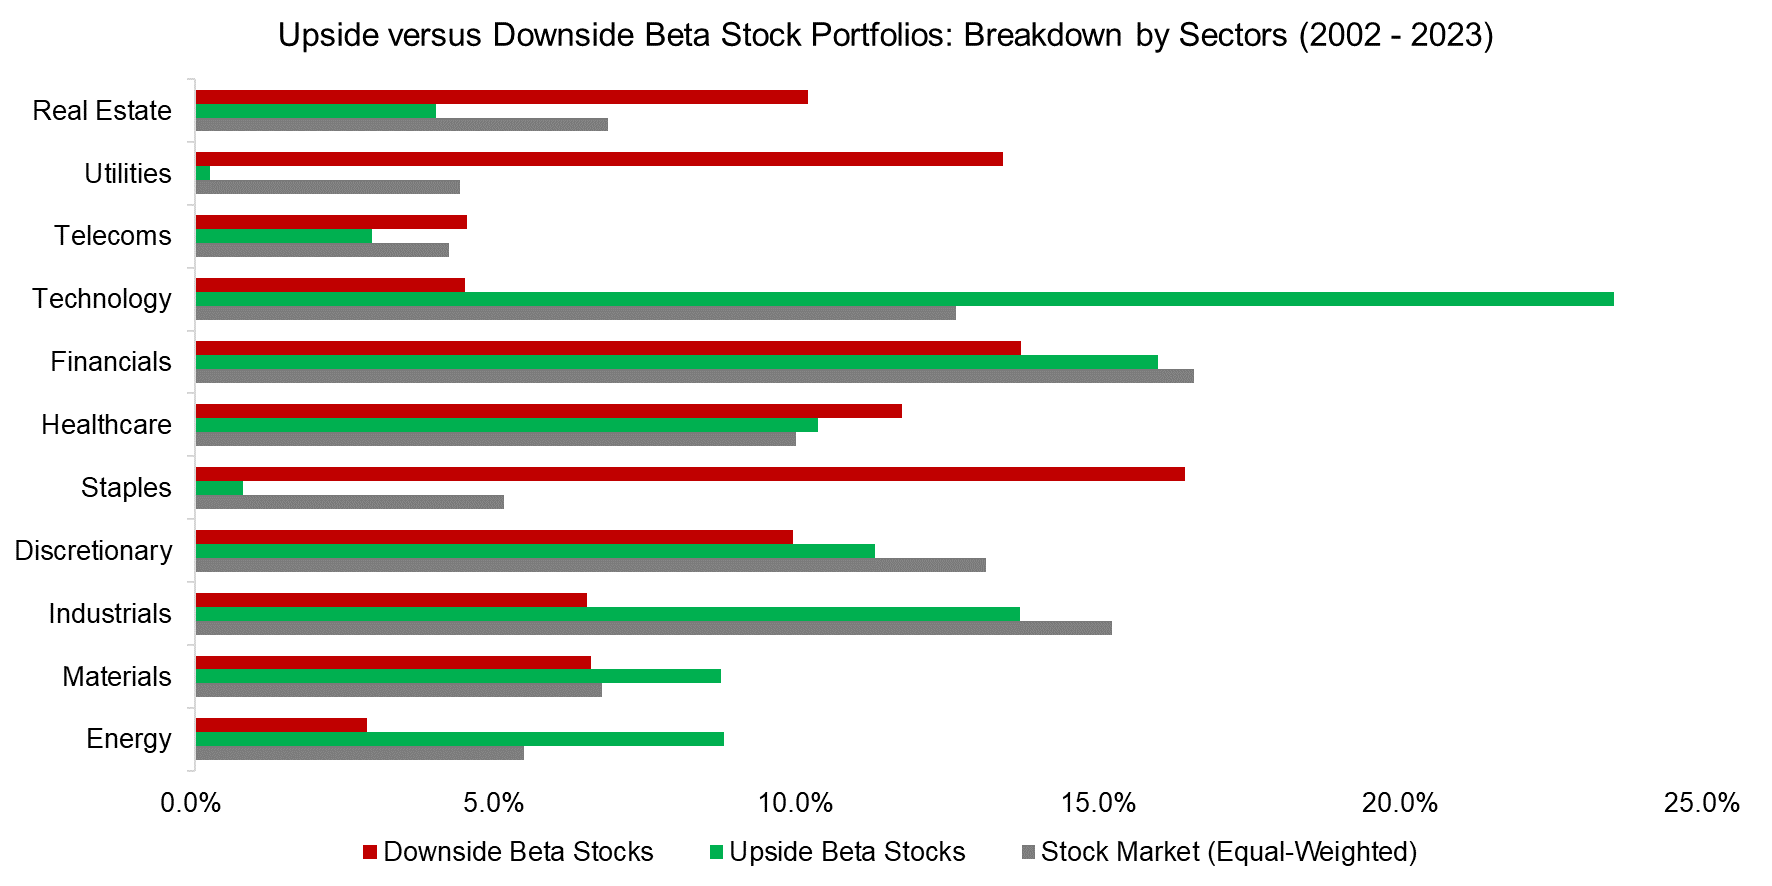 Upside-versus-Downside-Beta-Stock-Portfolios-Breakdown-by-Sectors-2002-2023